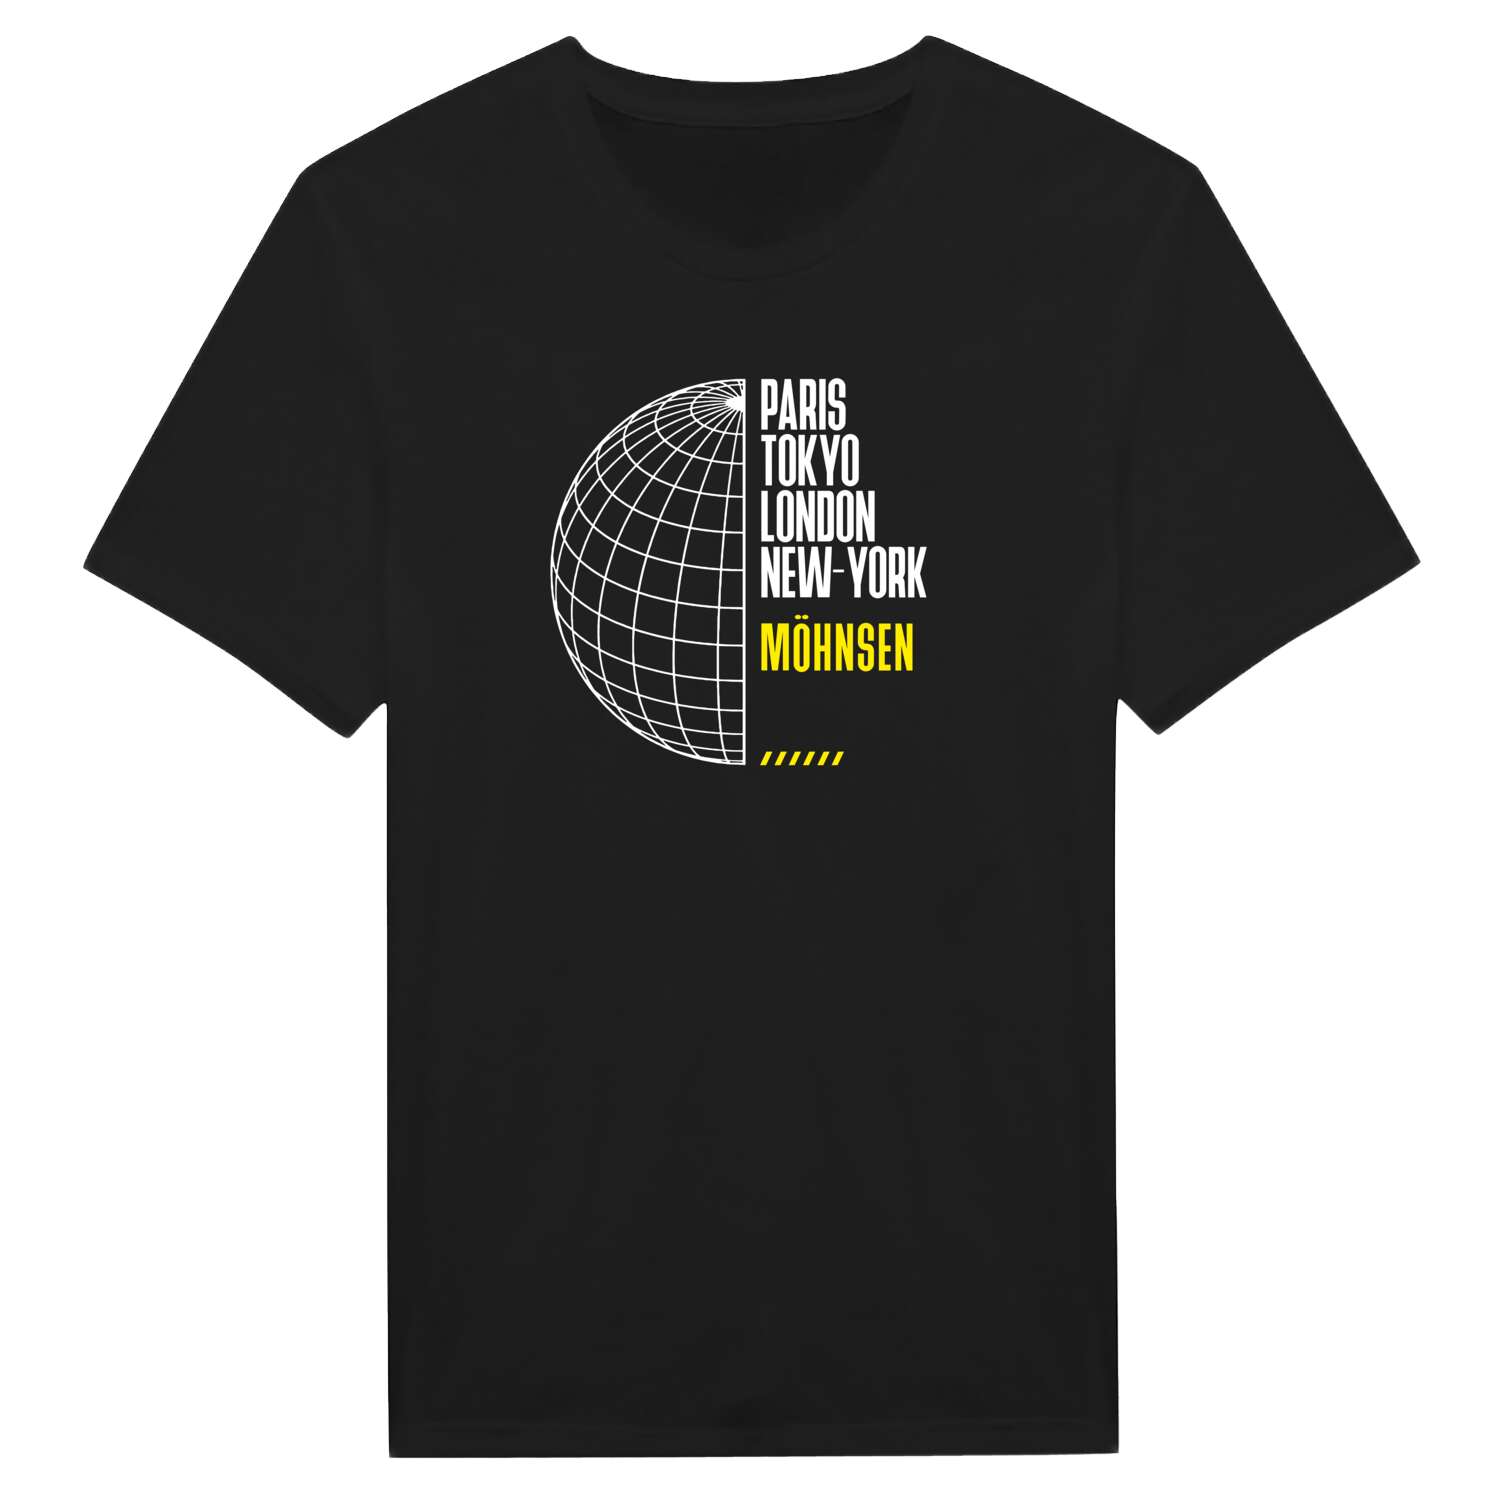 Möhnsen T-Shirt »Paris Tokyo London«